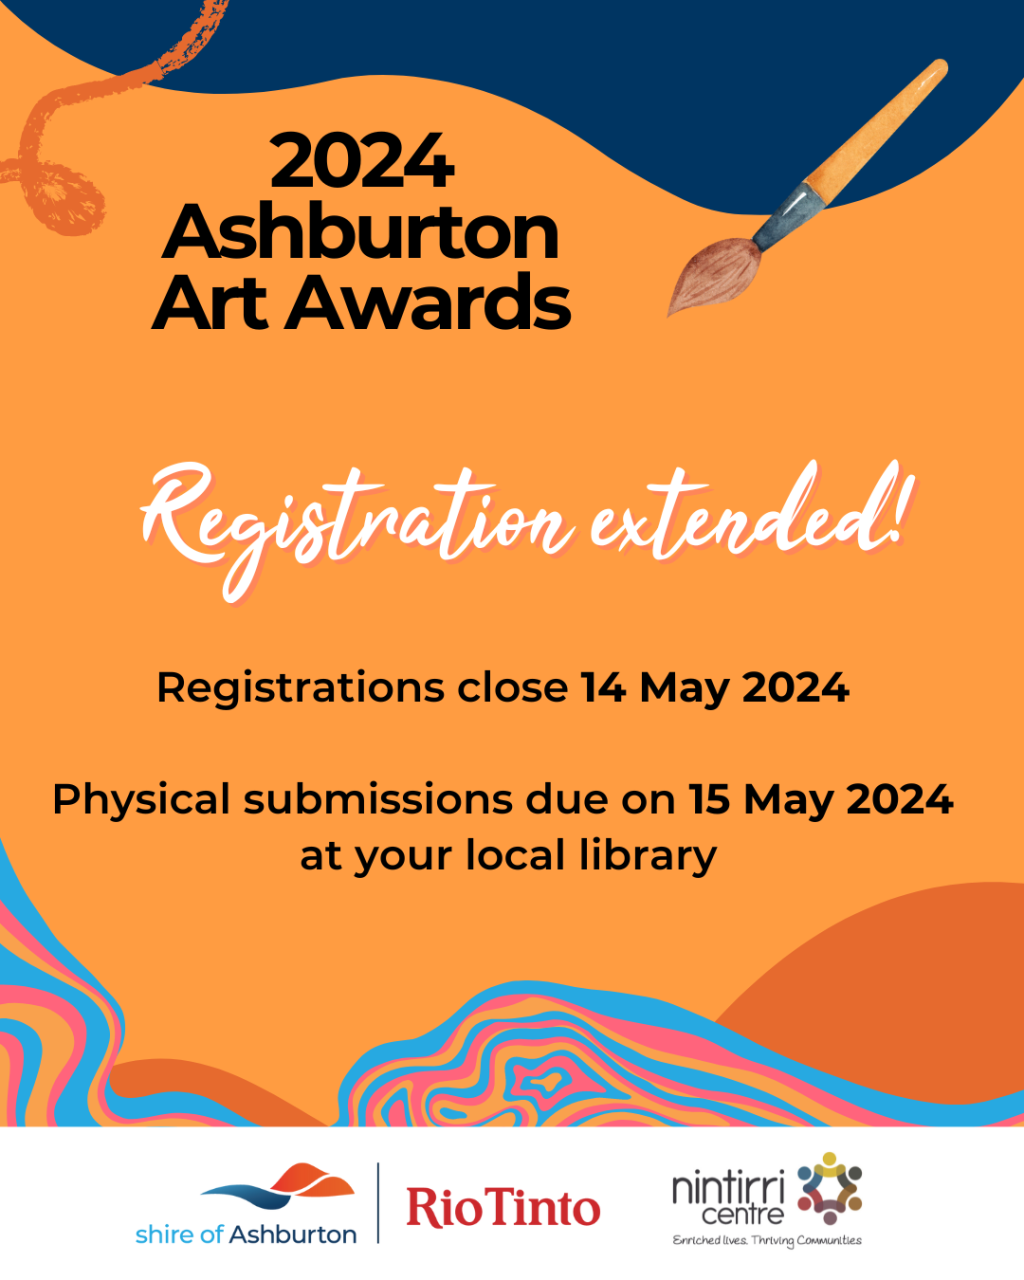 ASHBURTON ART AWARDS REGISTRATION EXTENDED!